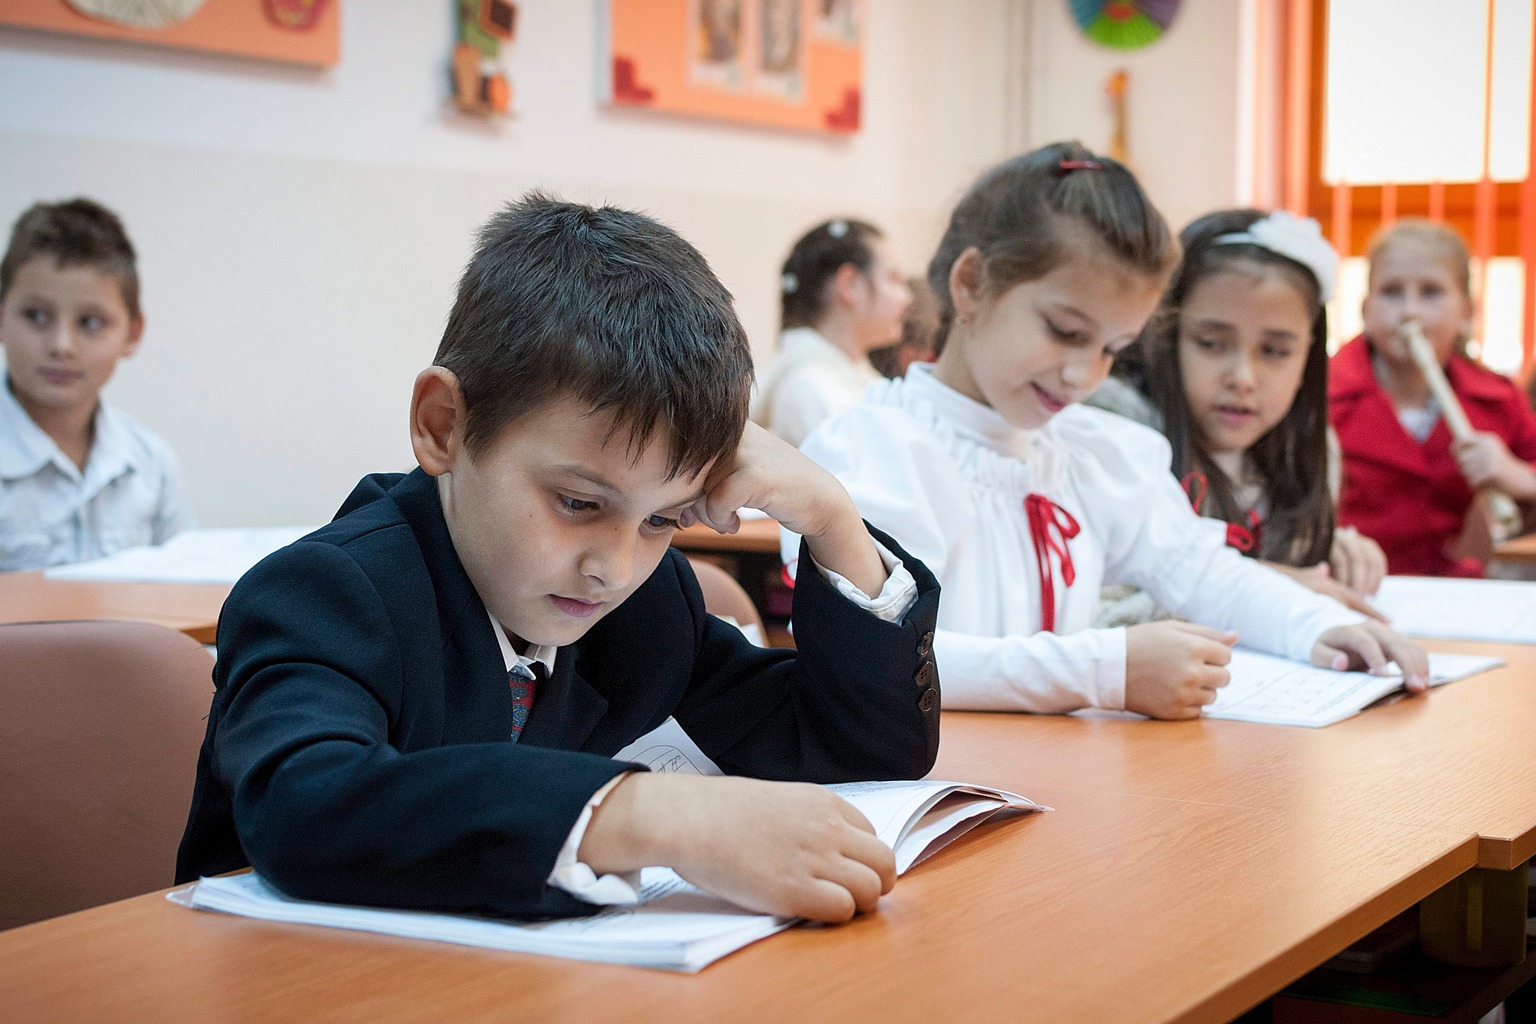 Реагуючи на зміни в закон України «Про освіту», угорська держава може відкрити на Закарпатті ряд приватних шкіл з угорською мовою викладання.

